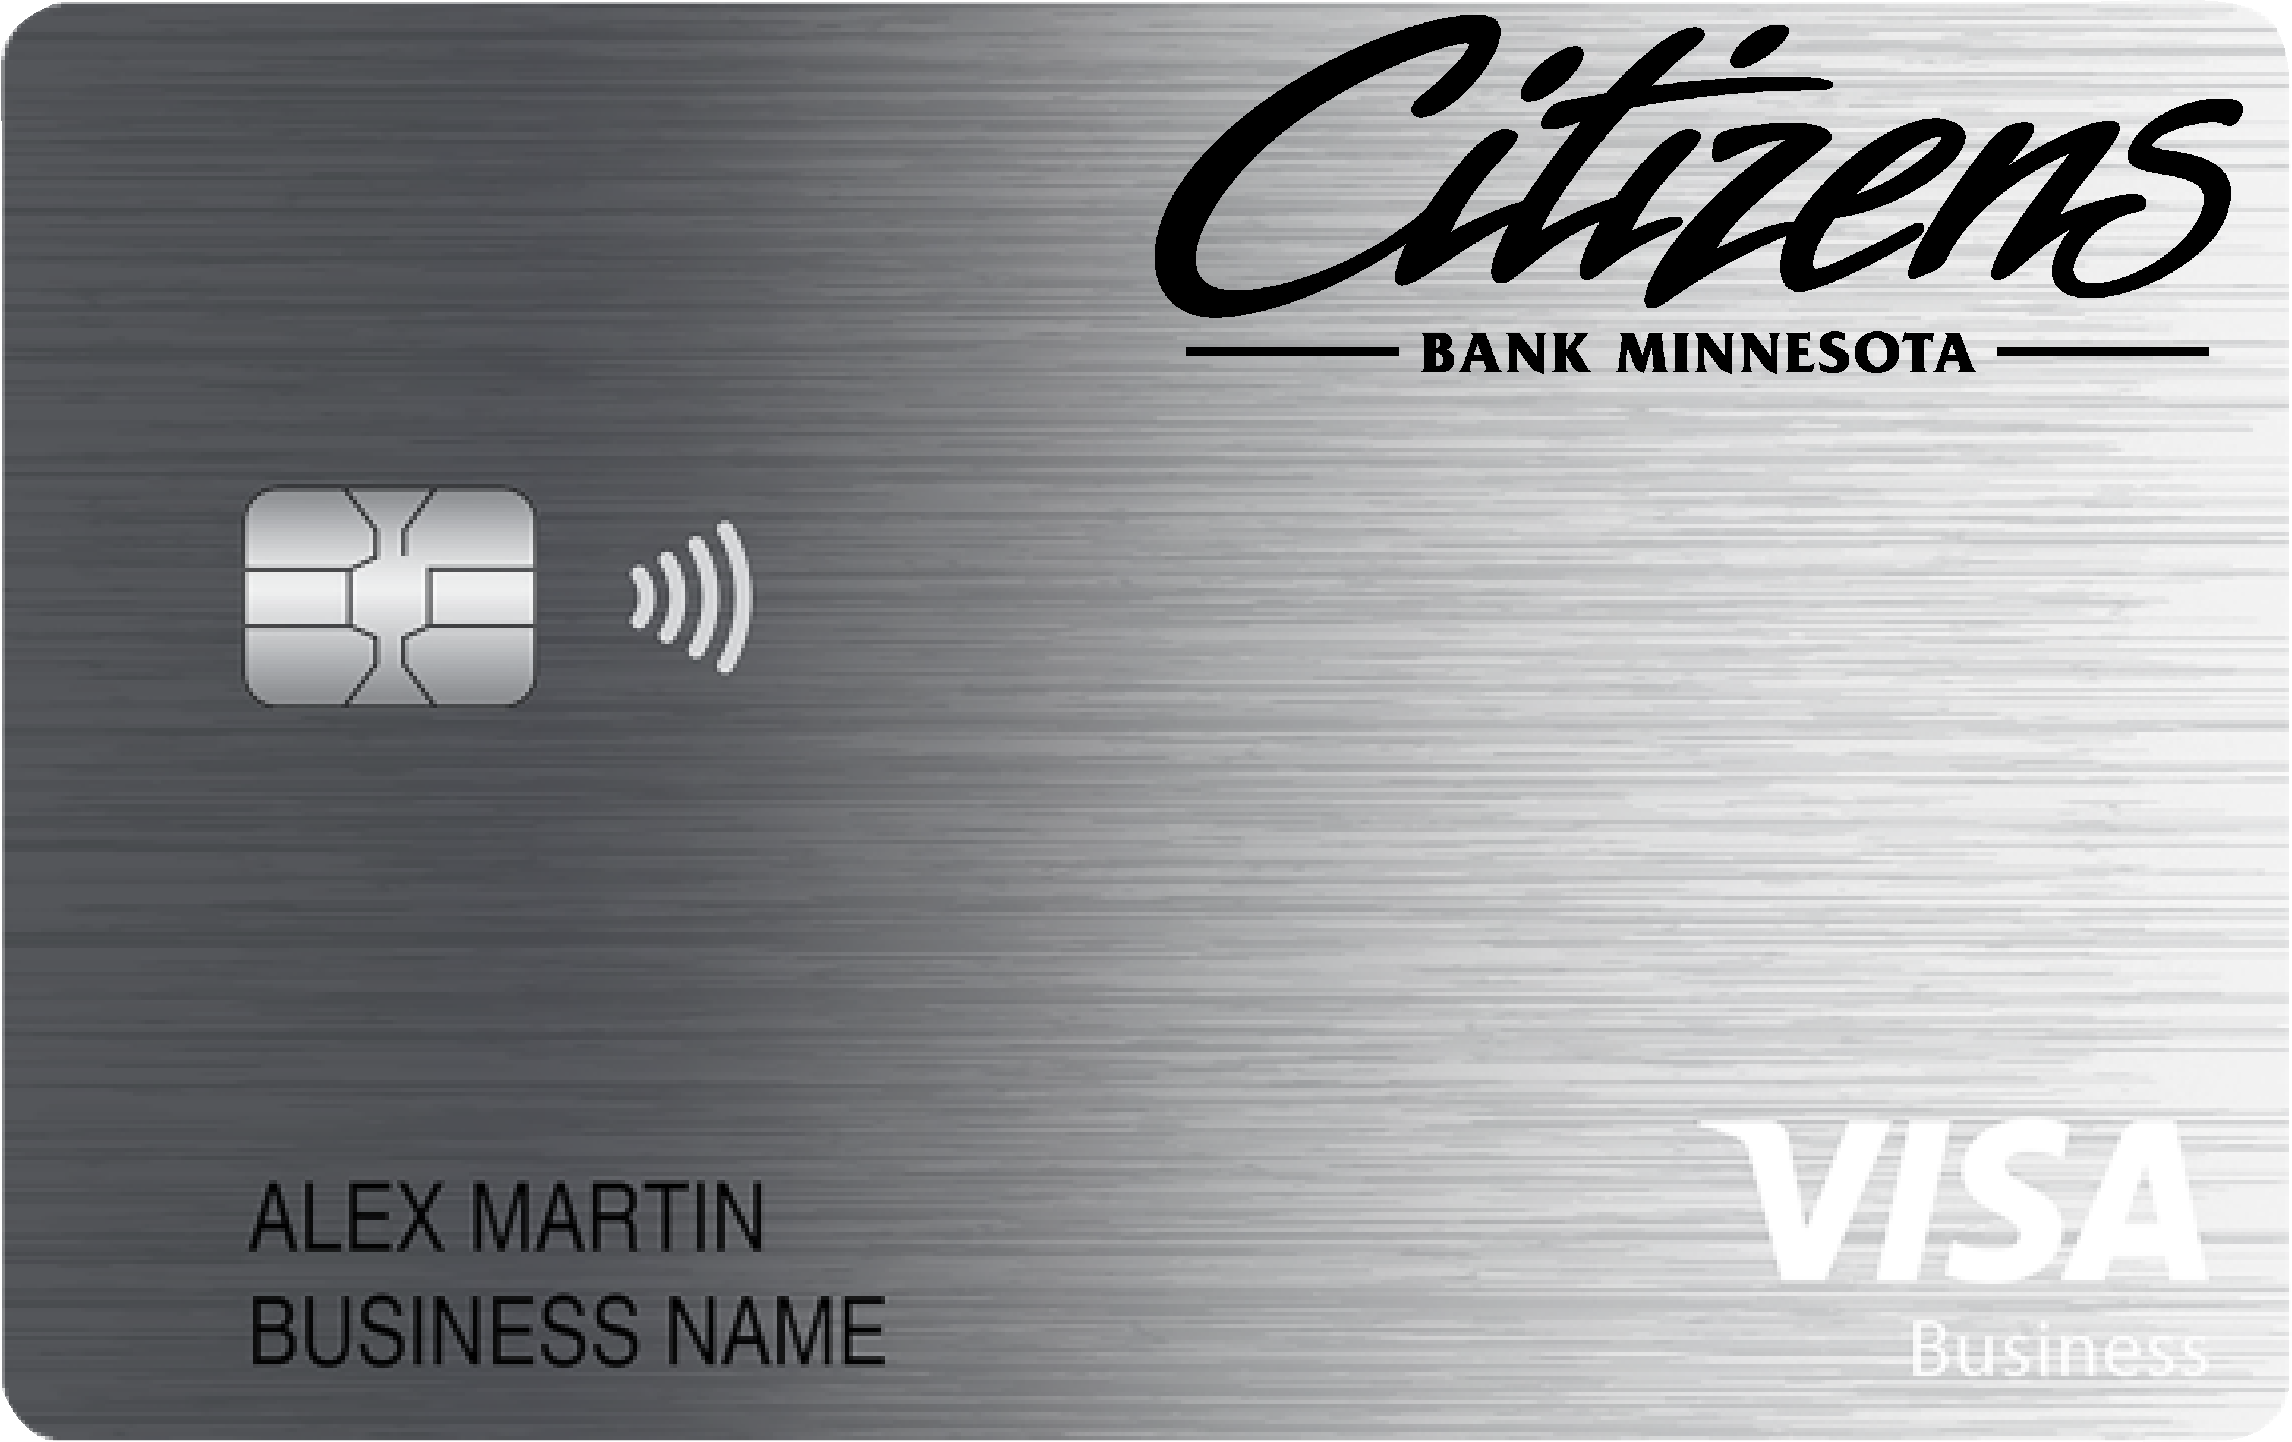 Citizens Bank Minnesota Business Card Card